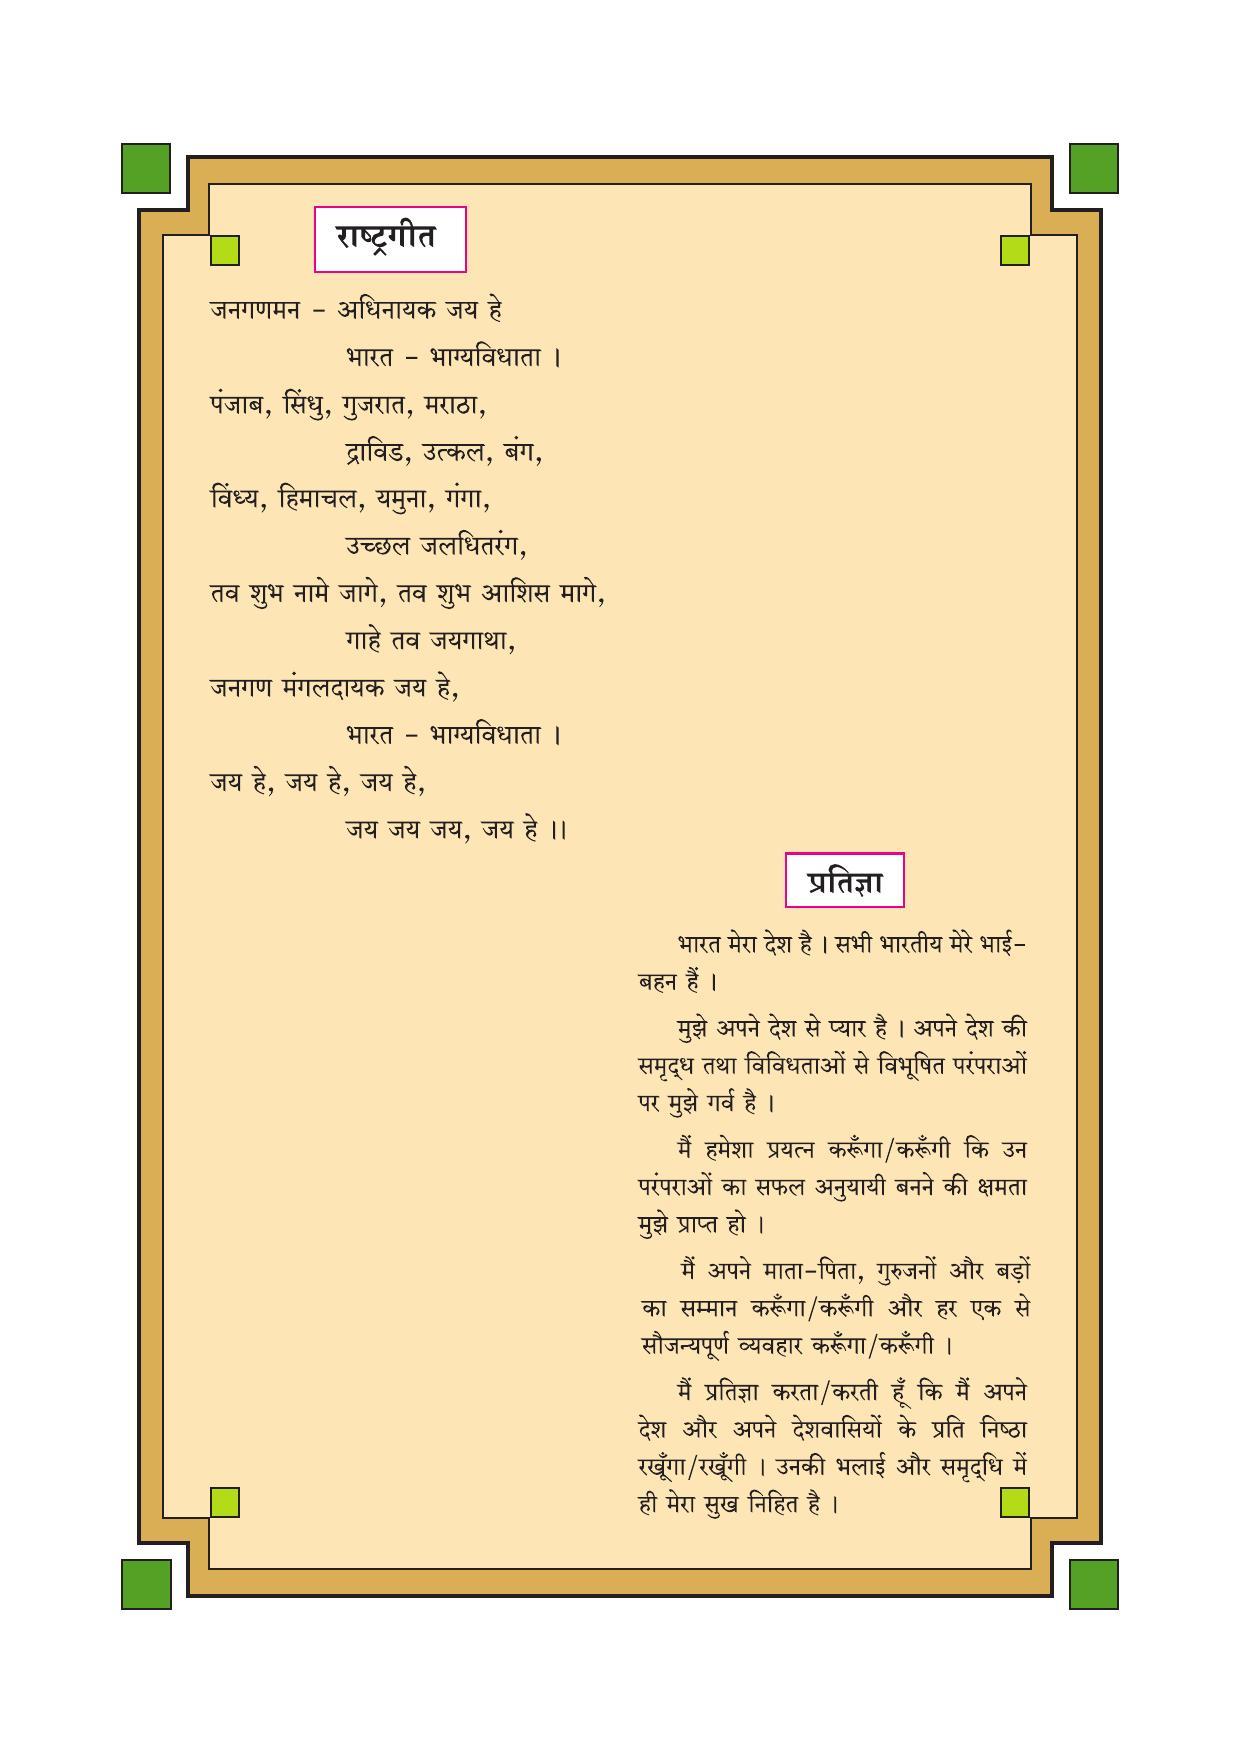 Maharashtra Board Class 1 Maths (Hindi Medium) Textbook - Page 6